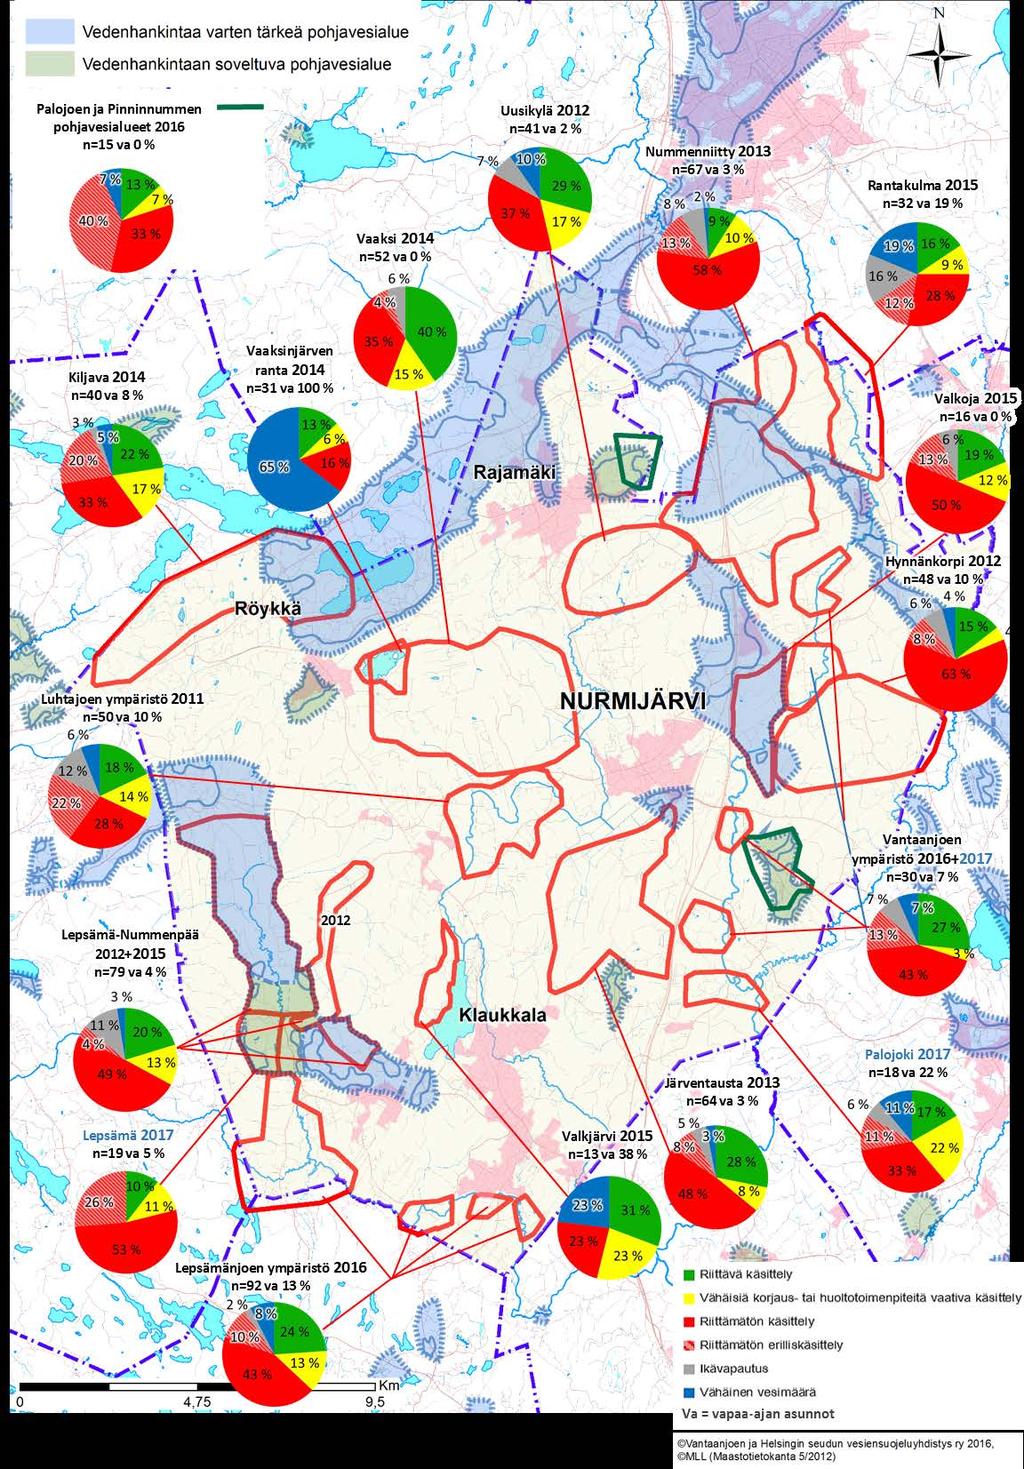 Liite 4. Jäteveden käsittelyn taso neuvonta-alueittain vuosina 2011 2017 Nurmijärvellä.